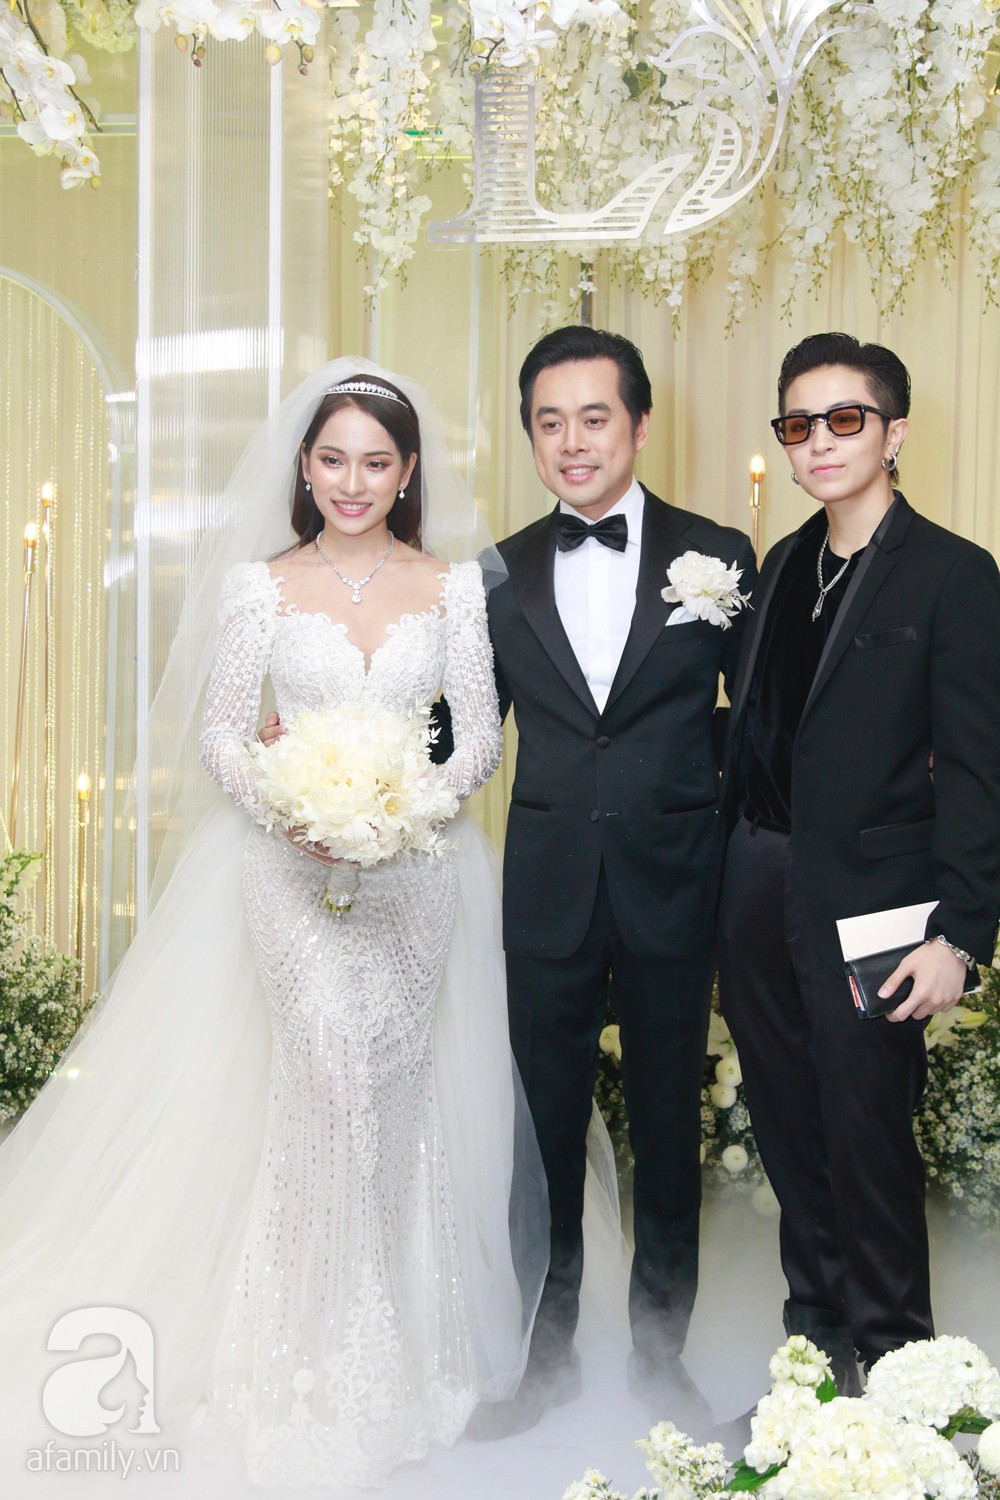 Tiệc cưới chính thức bắt đầu, cô dâu Sara Lưu âu yếm lau nhẹ vết son của mình trên môi chú rể Dương Khắc Linh-27